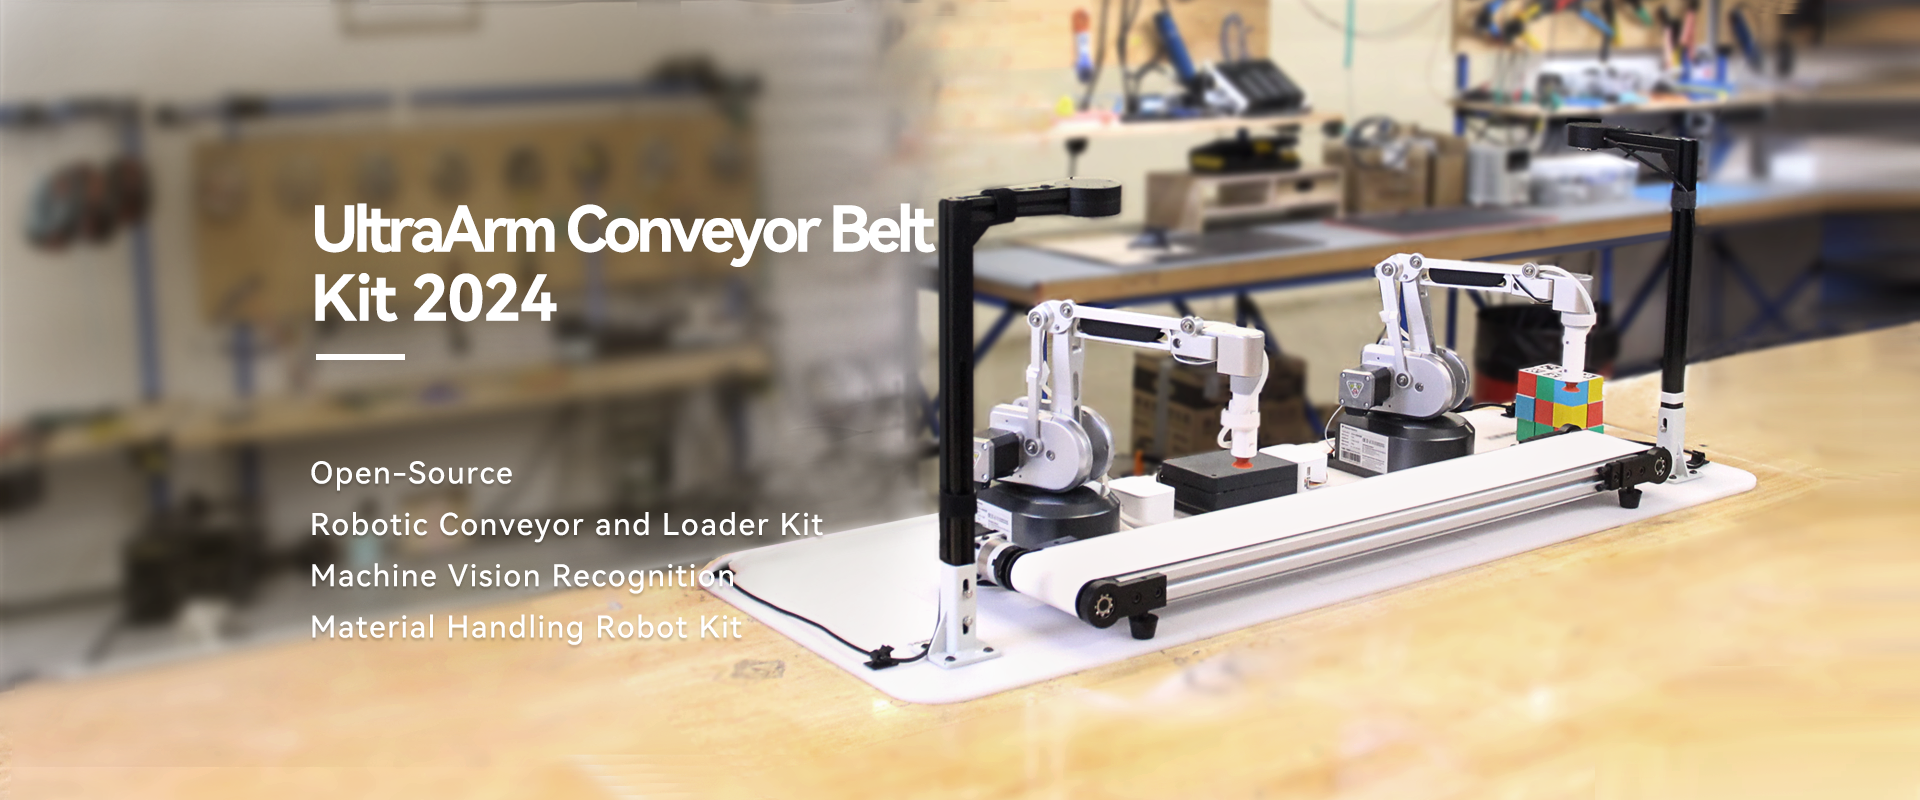 UltraArm Conveyor Belt Kit 2024